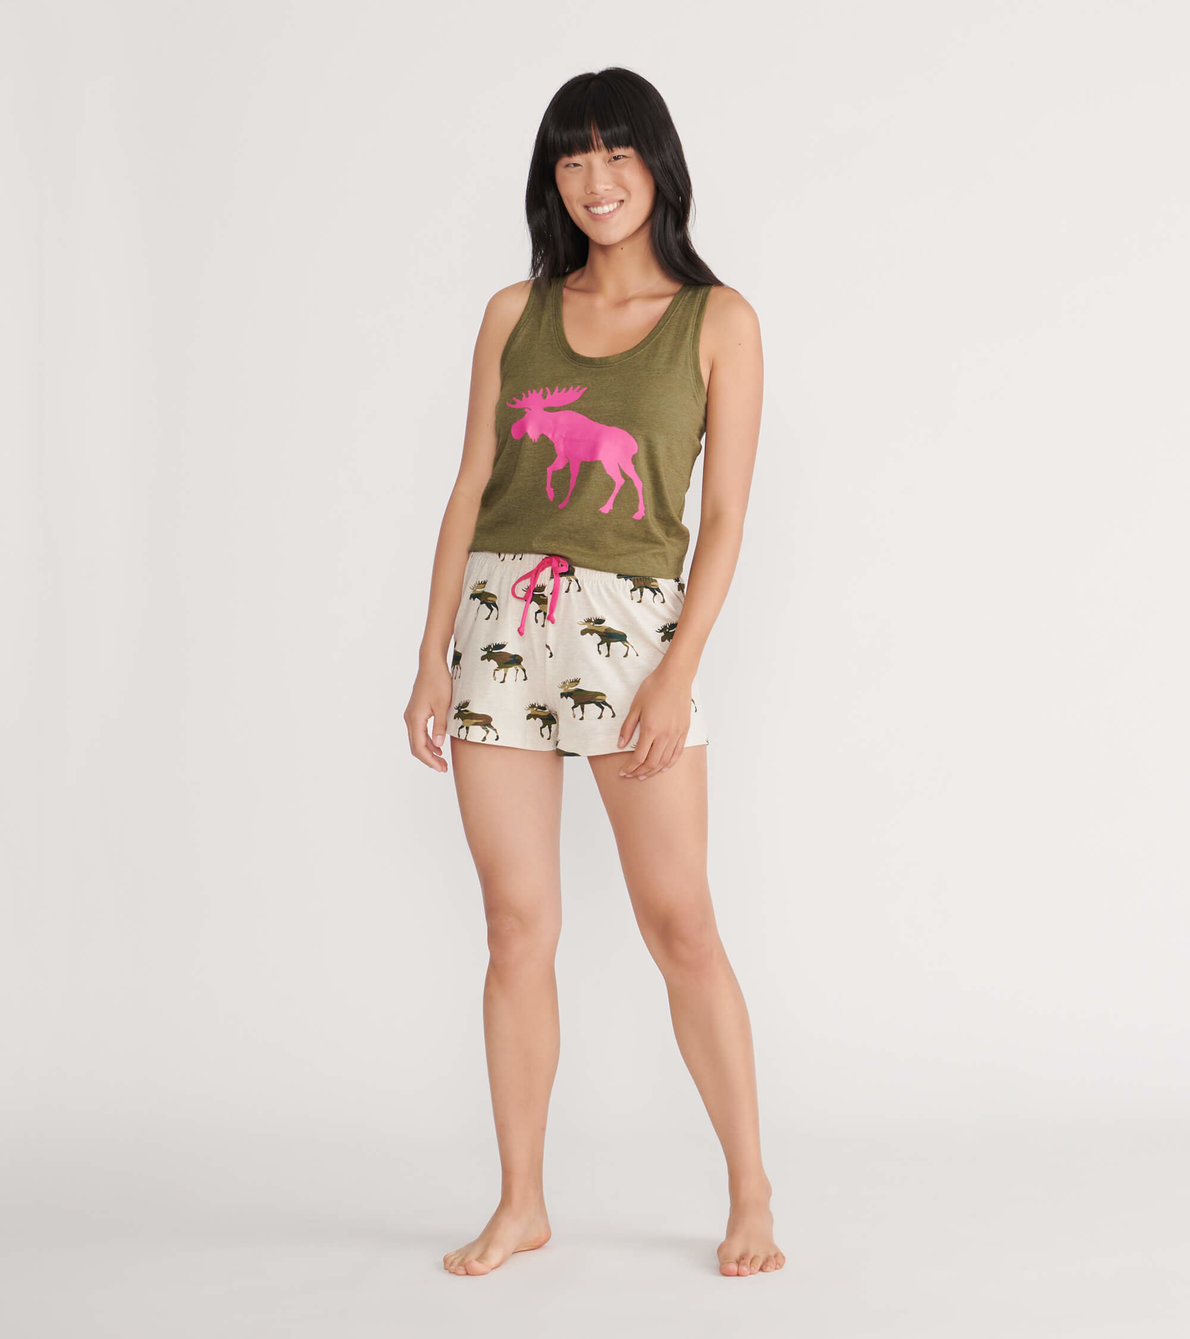 View larger image of Camooseflage Women's Pajama Tank